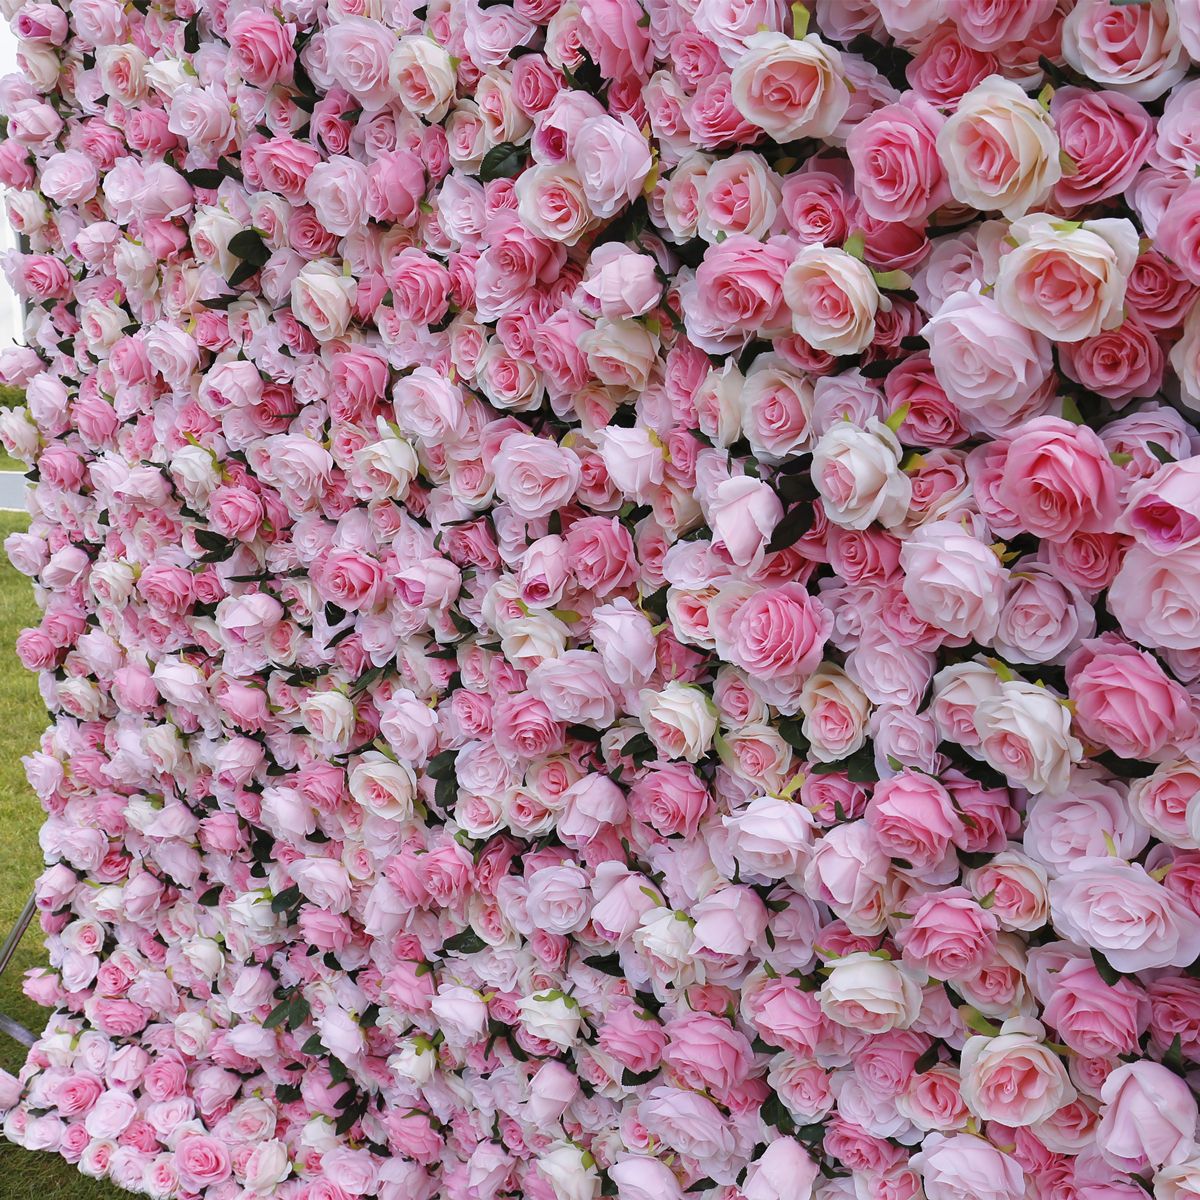 Գործարանային ուղղակի վաճառքի մոդելավորում ծաղկի պատի գործվածք վարդագույն մետաքսե ծաղկի պատի խանութի դռների ձևավորում